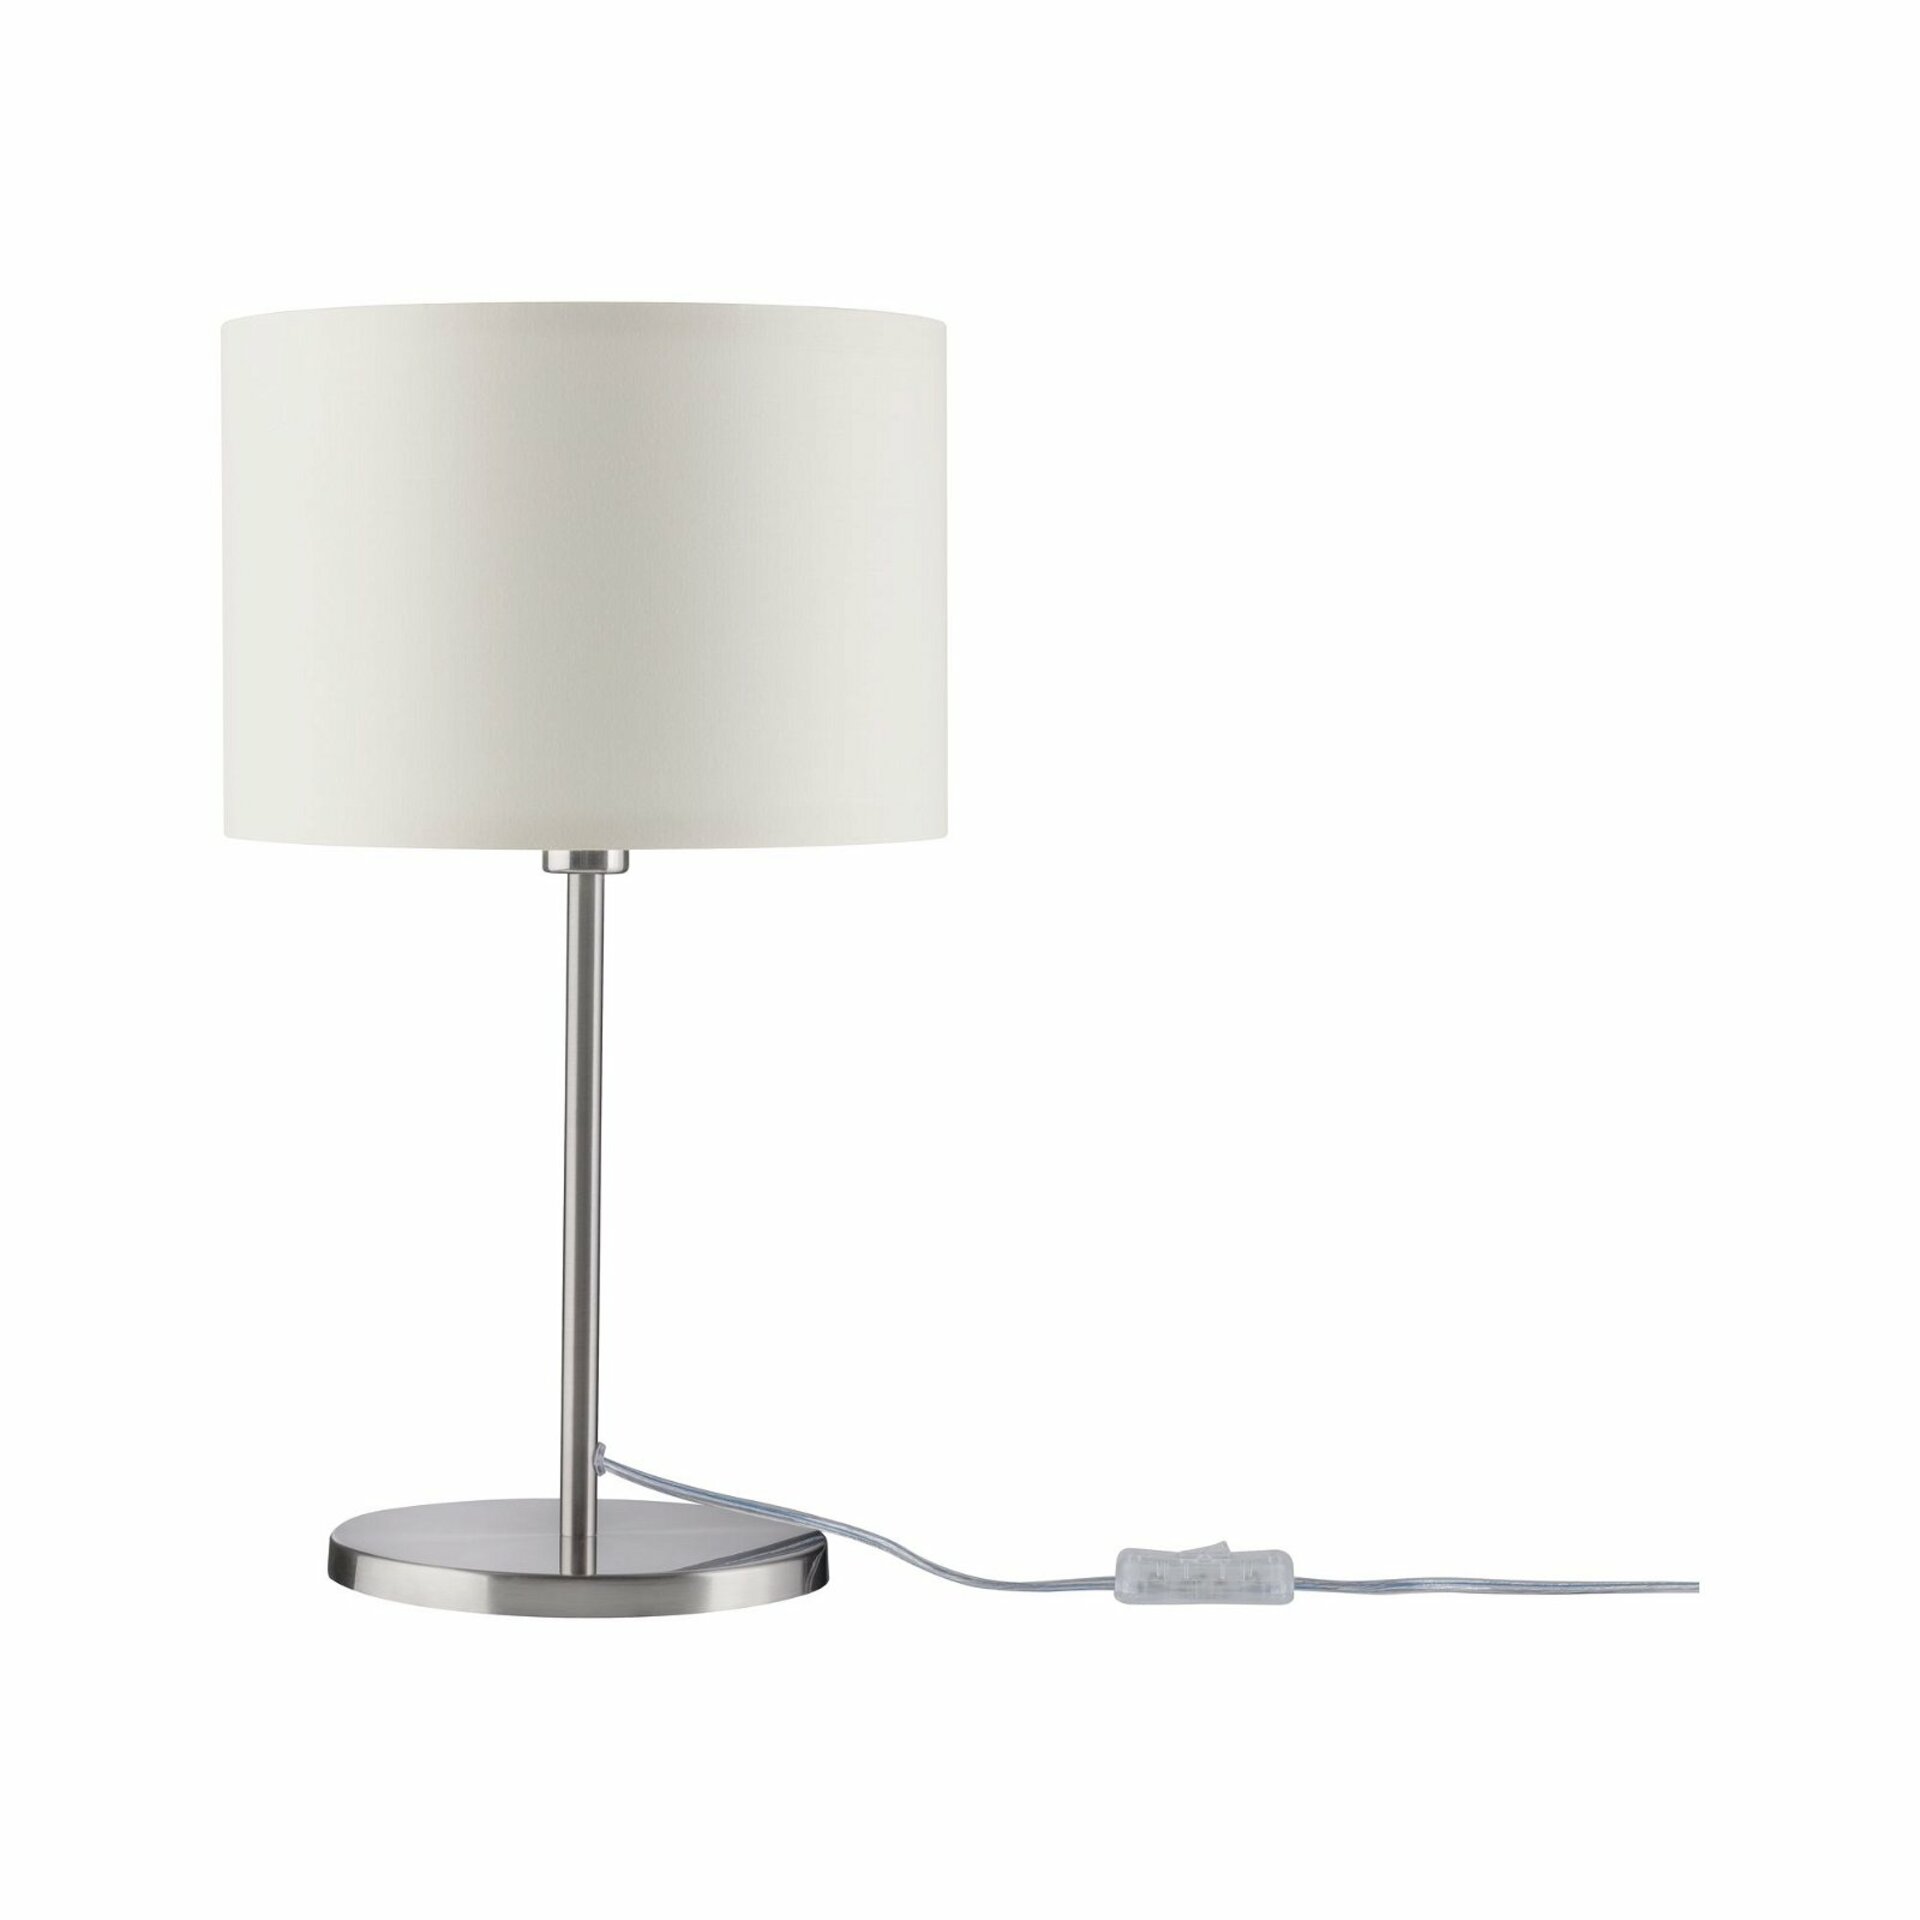 Paulmann Tessa stolní lampa Creme/kov kartáčovaný bez zdroje světla, max. 40W E14 709.23 P 70923